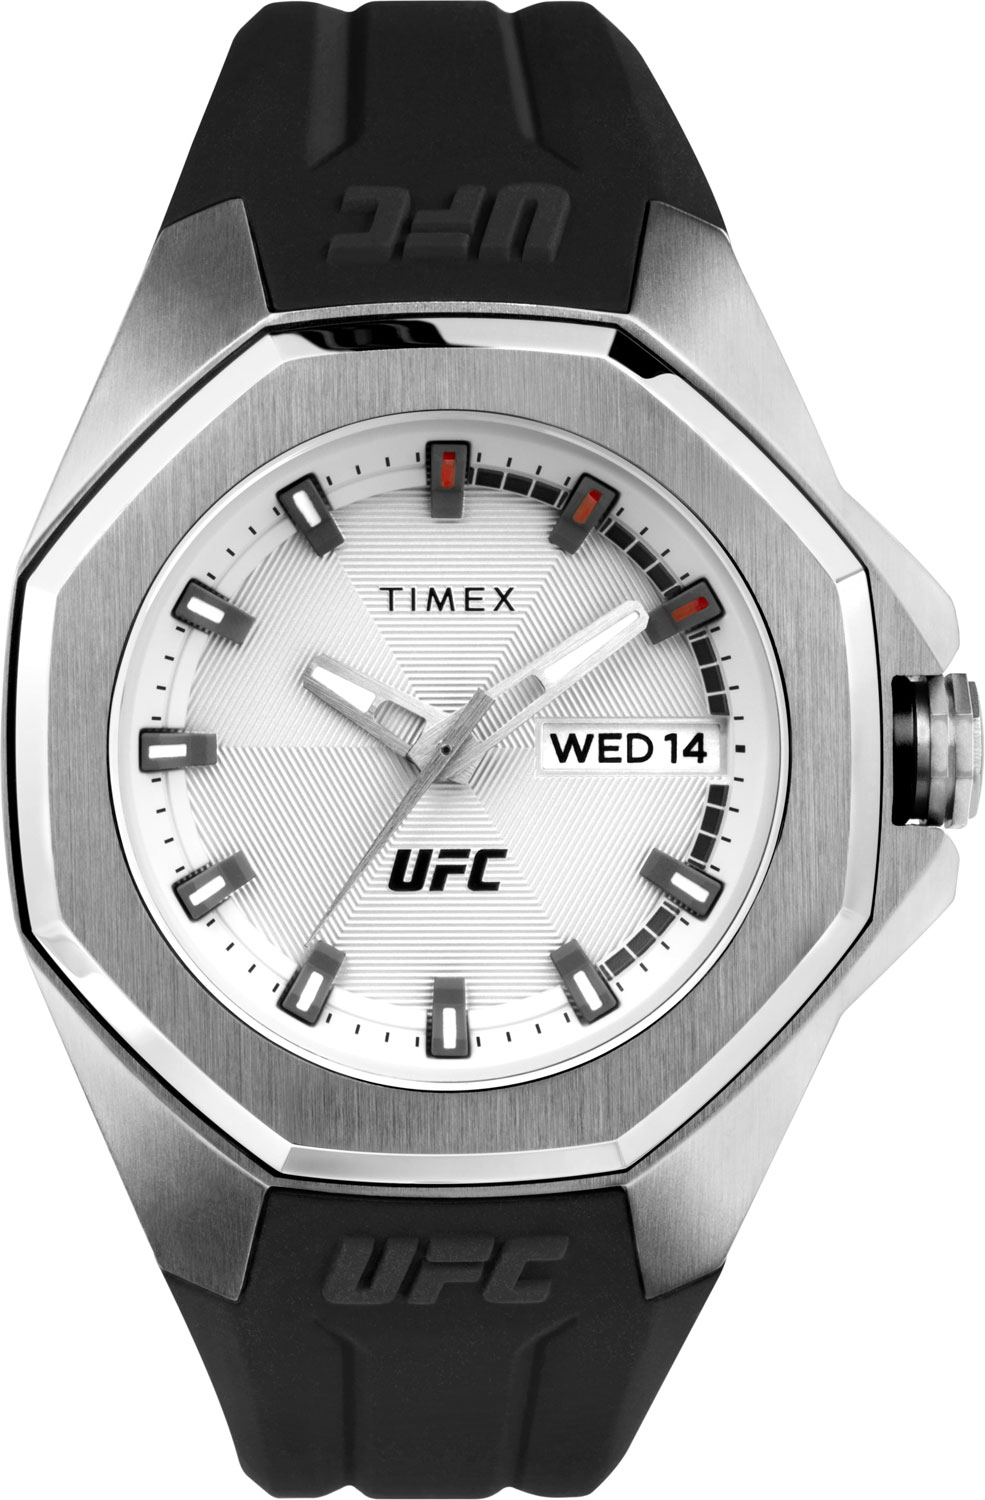   Timex UFC TW2V57200